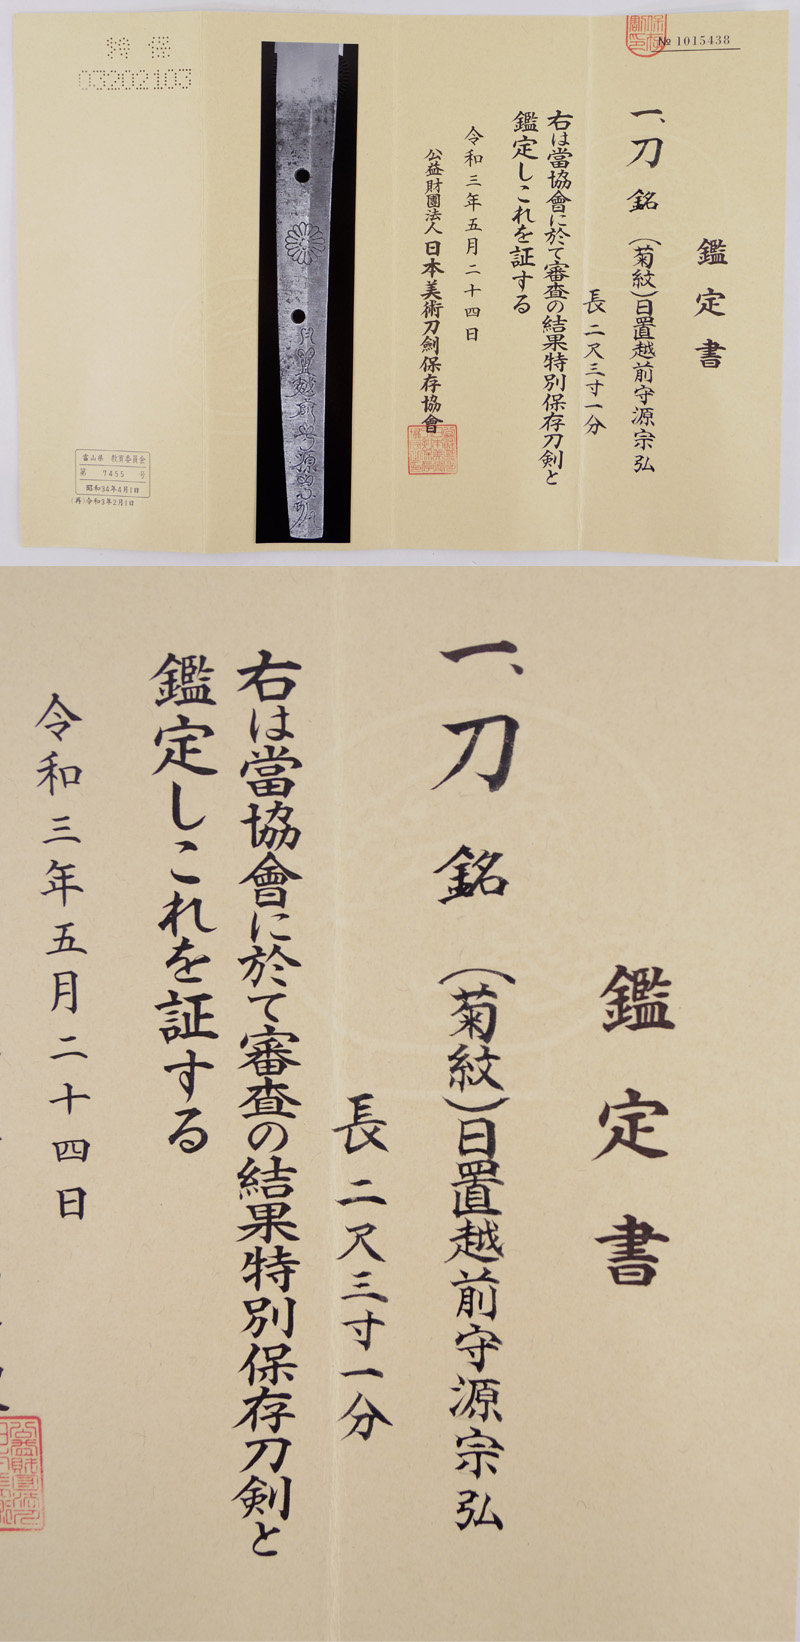 刀　(菊紋)日置越前守源宗弘　(日置光平の弟) (新刀上作) (良業物) Picture of Certificate